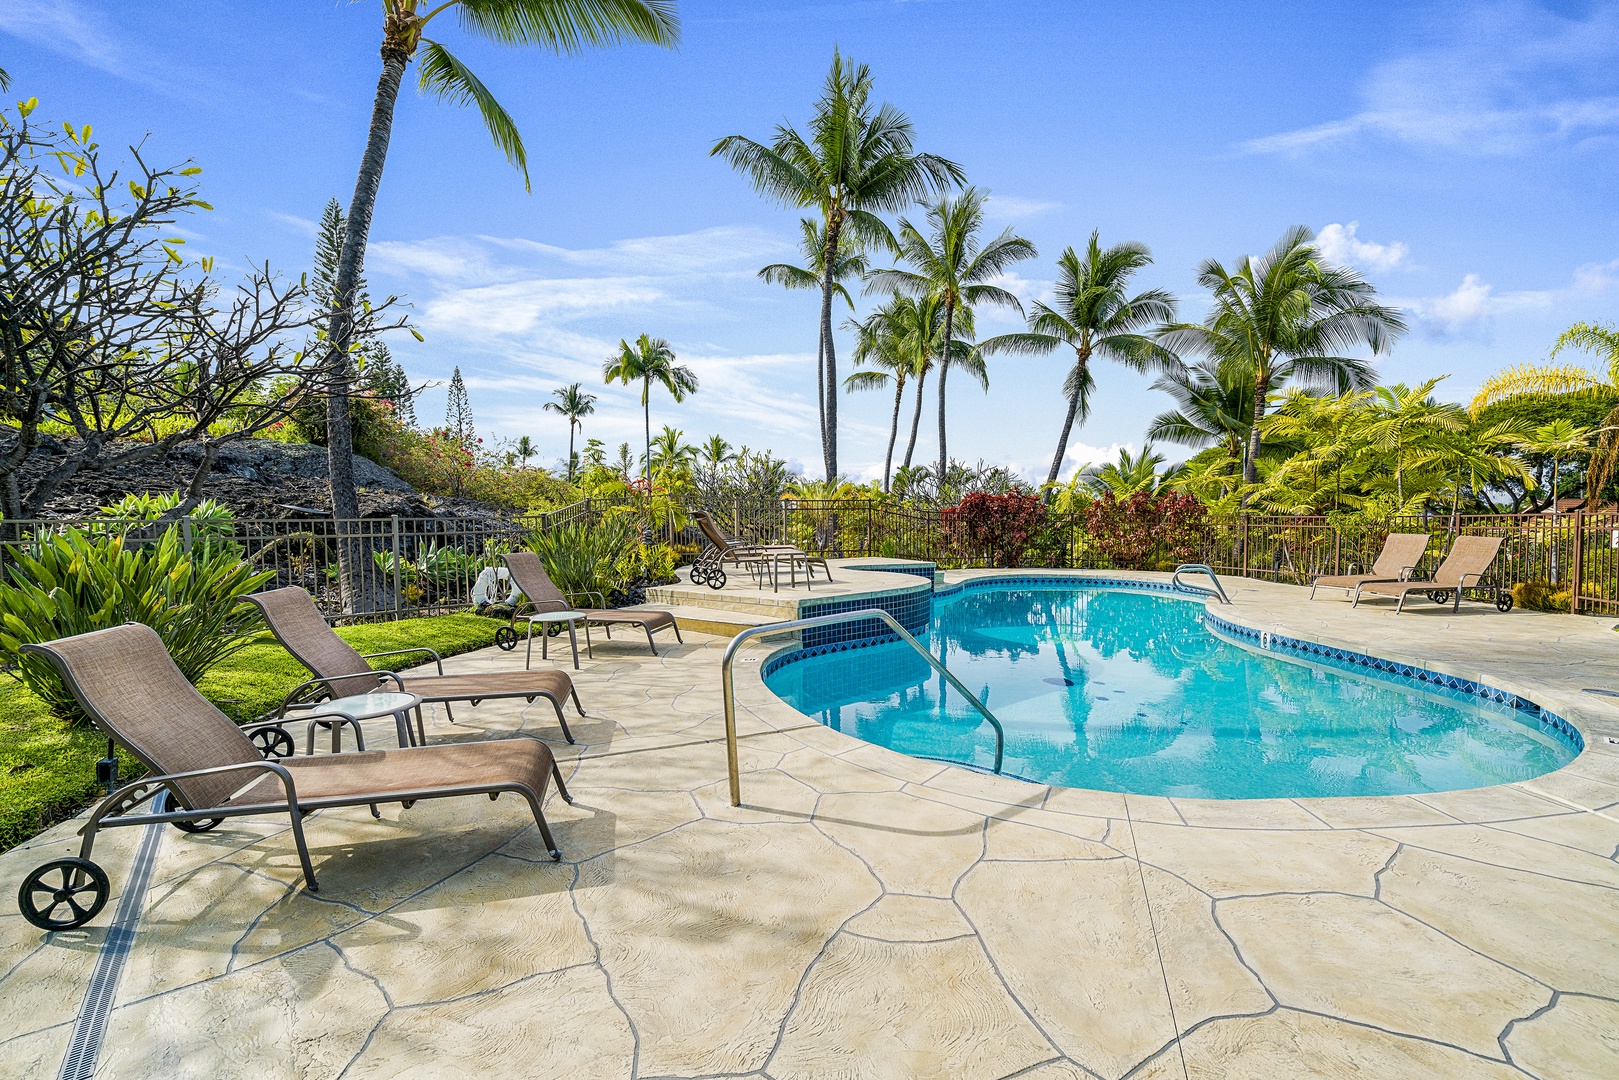 Kailua Kona Vacation Rentals, Keauhou Resort 113 - Lounge pool side with the whole group!